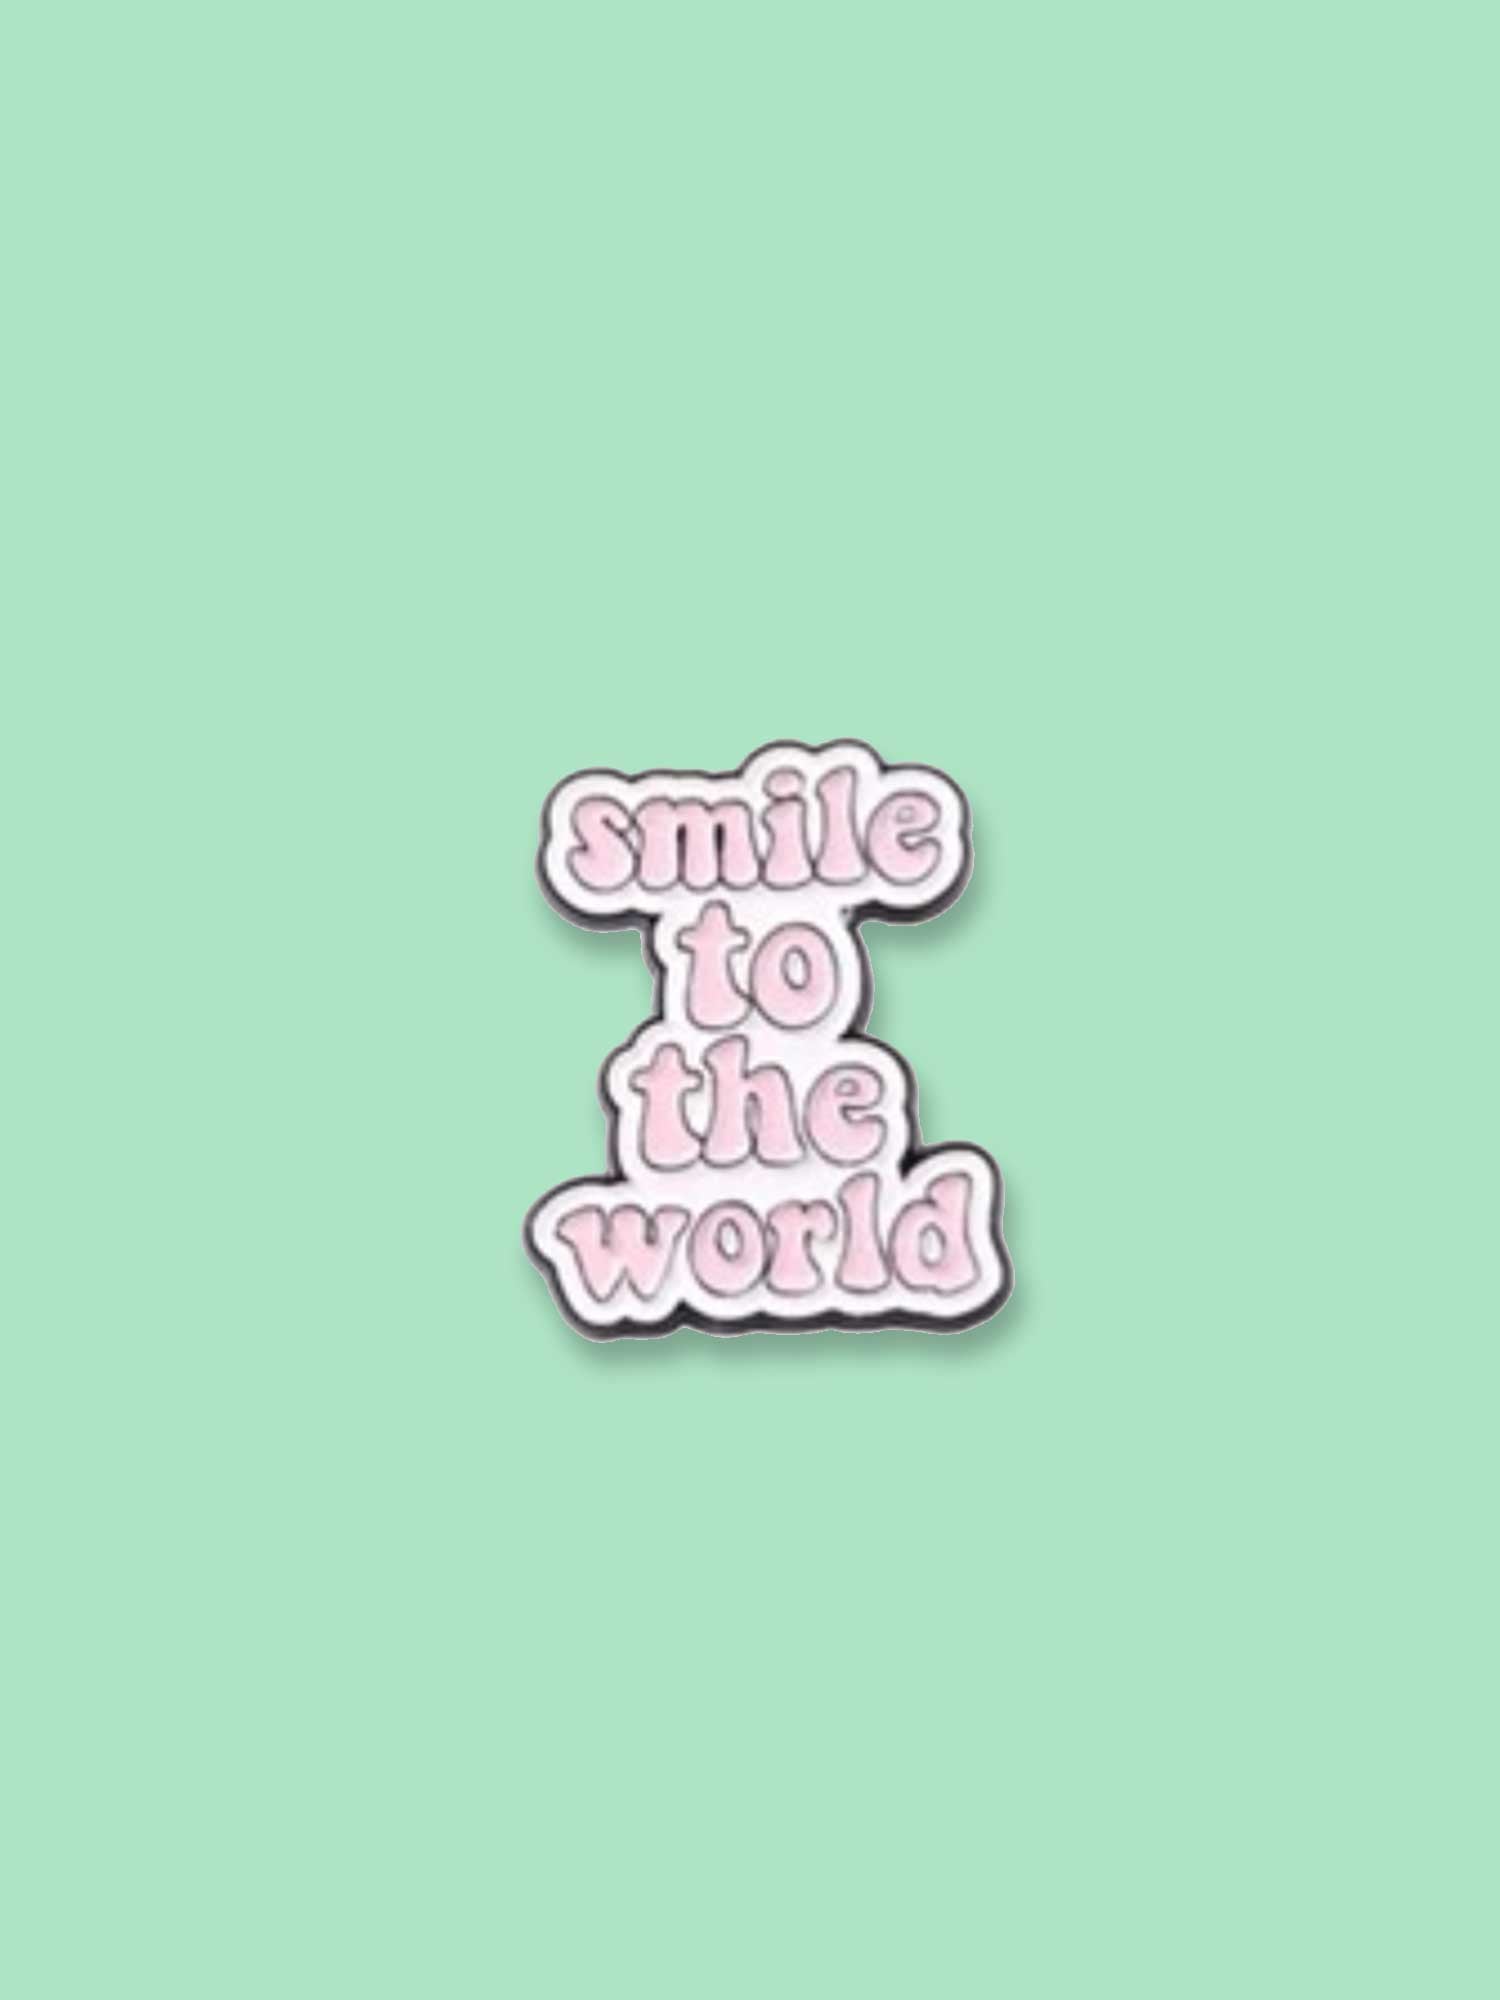 Smile To The World Enamel Pin